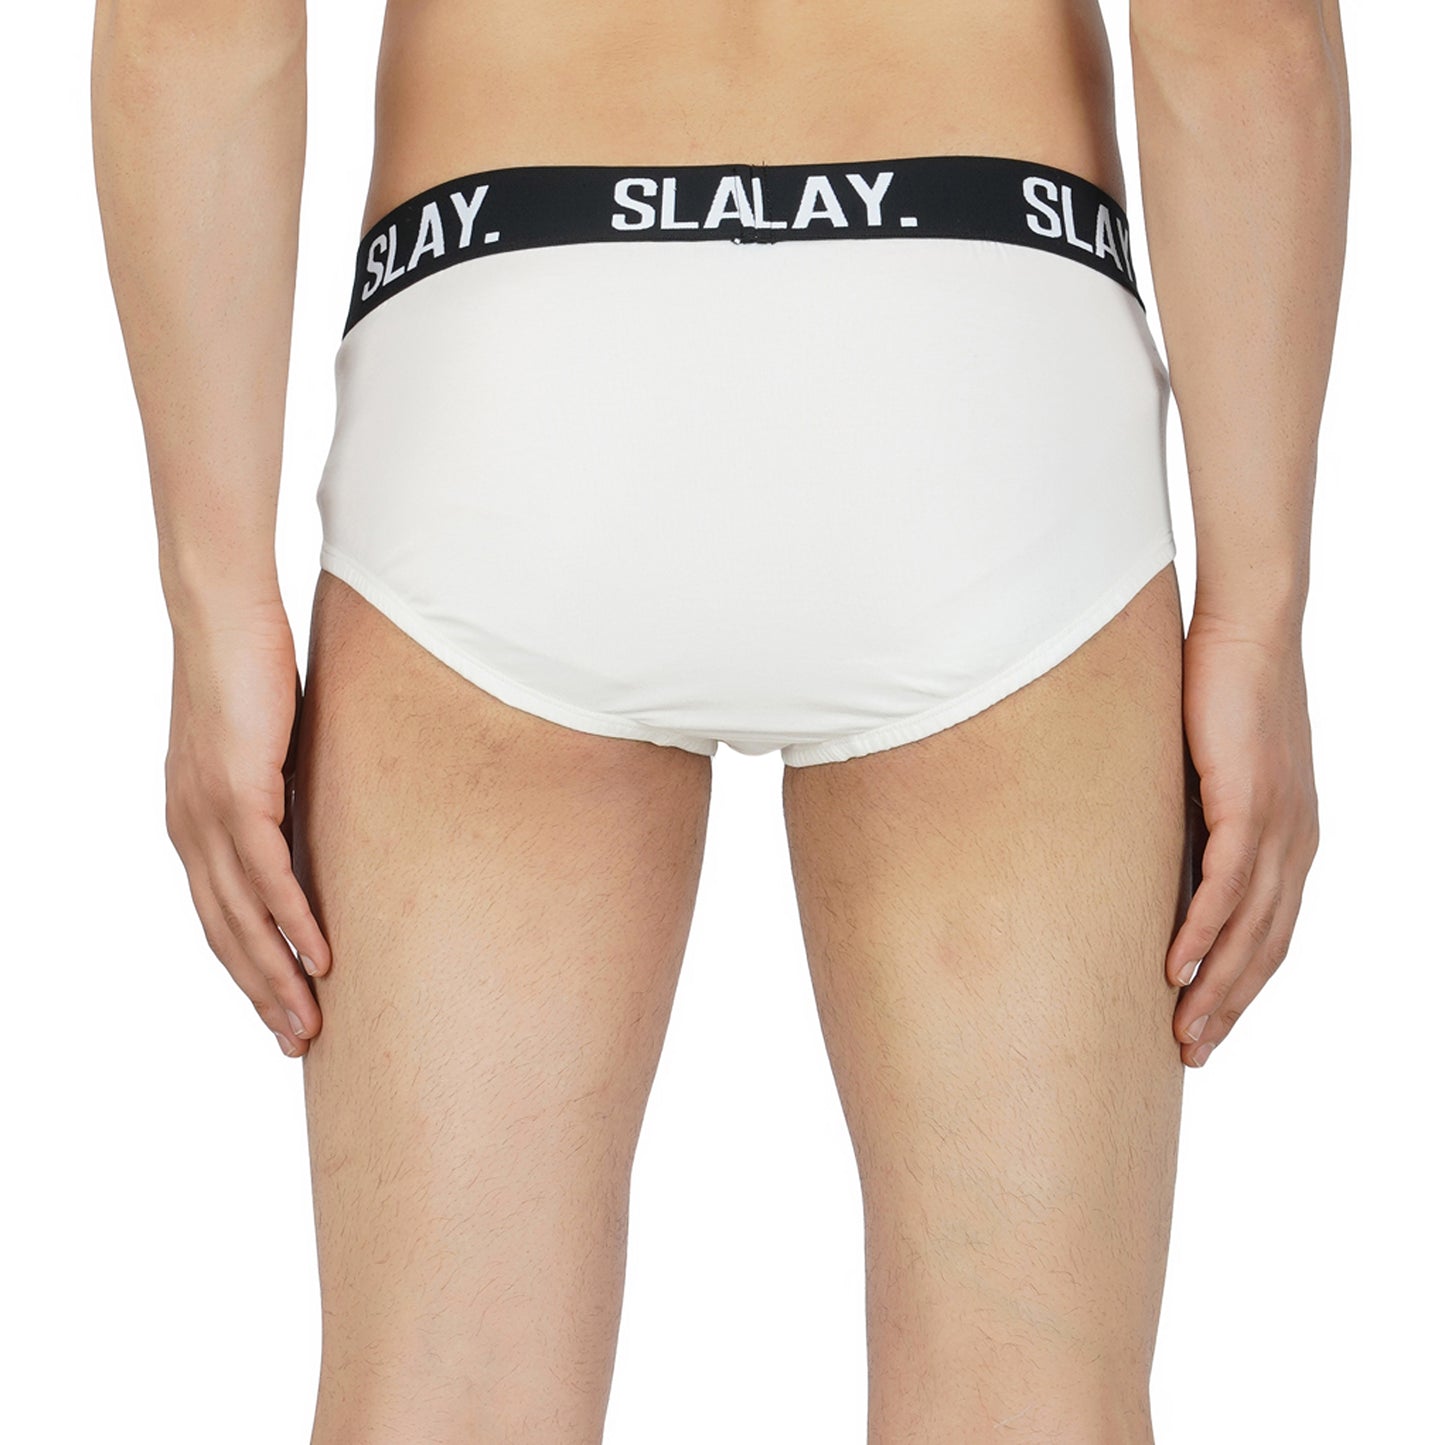 SLAY. Men's White Underwear Cotton Briefs